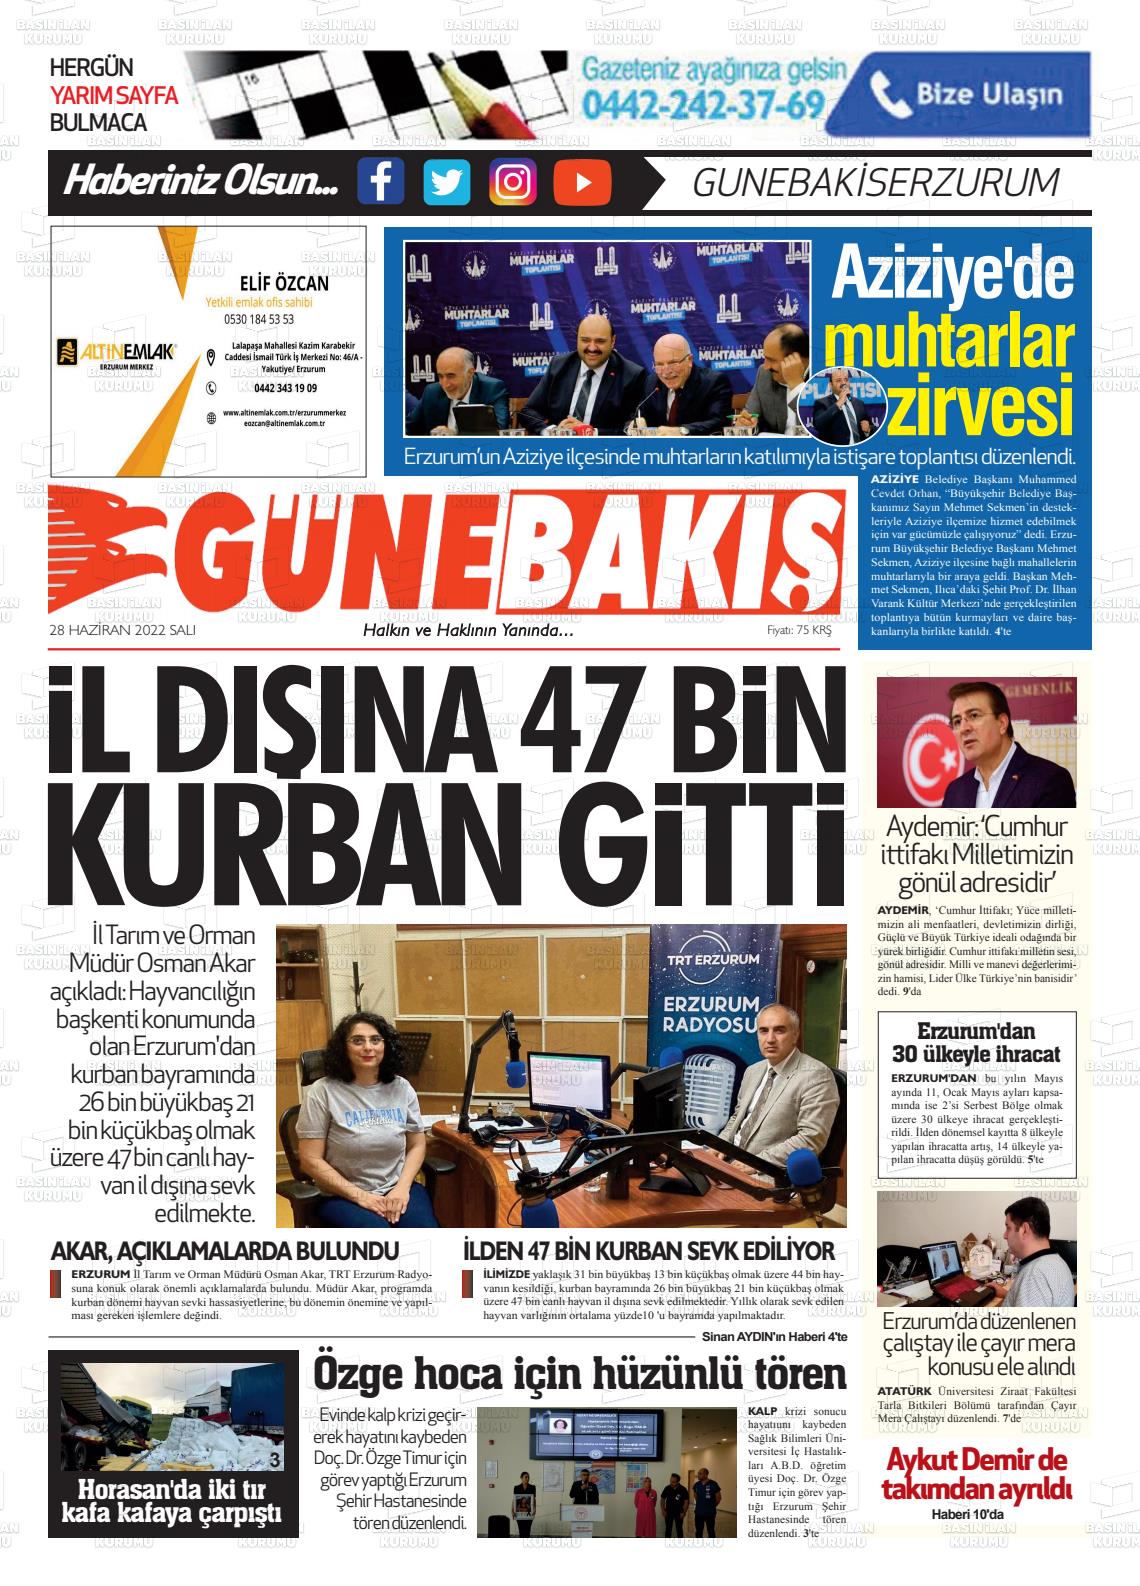 28 Haziran 2022 Erzurum Günebakış Gazete Manşeti